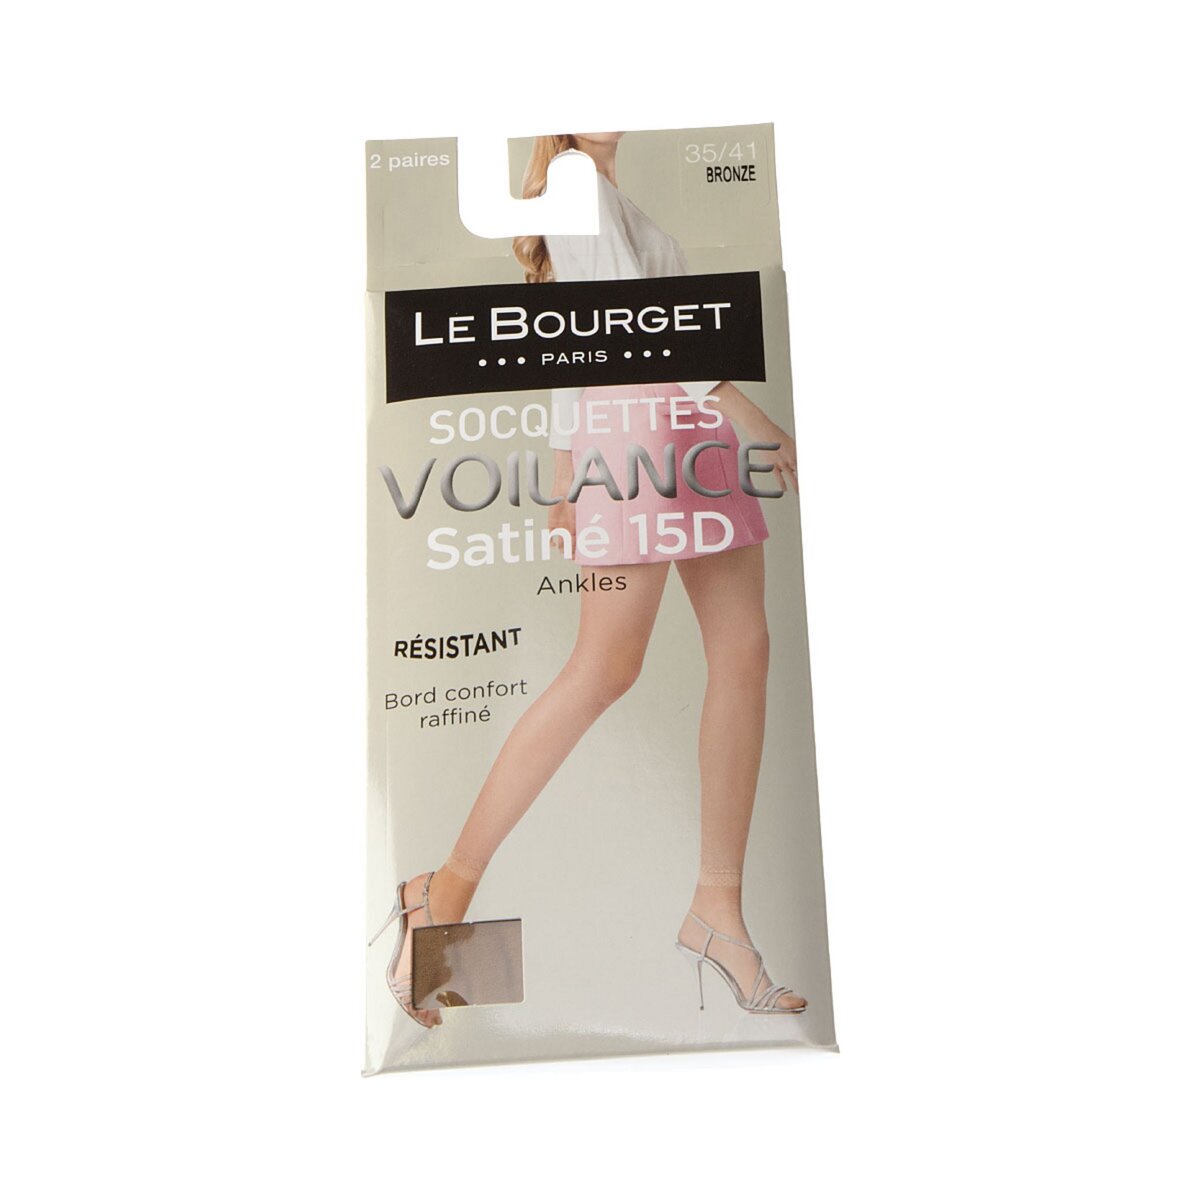 Le Bourget Bas socquettes - Lot de 2 - Infilable - Invisible - Satiné - Voilance